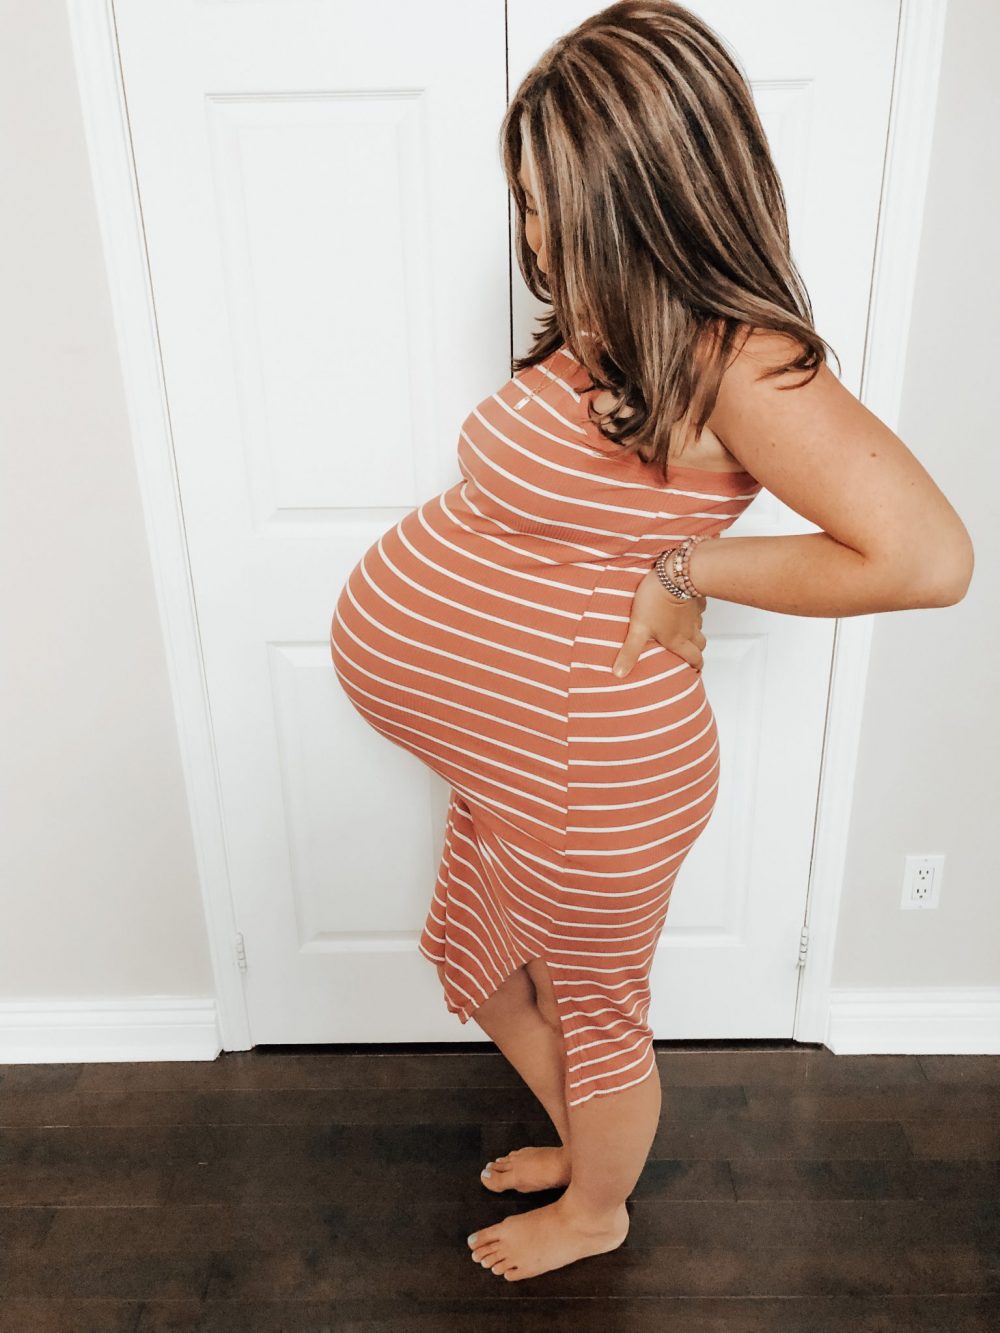 38 Weeks – Final Pregnancy Post